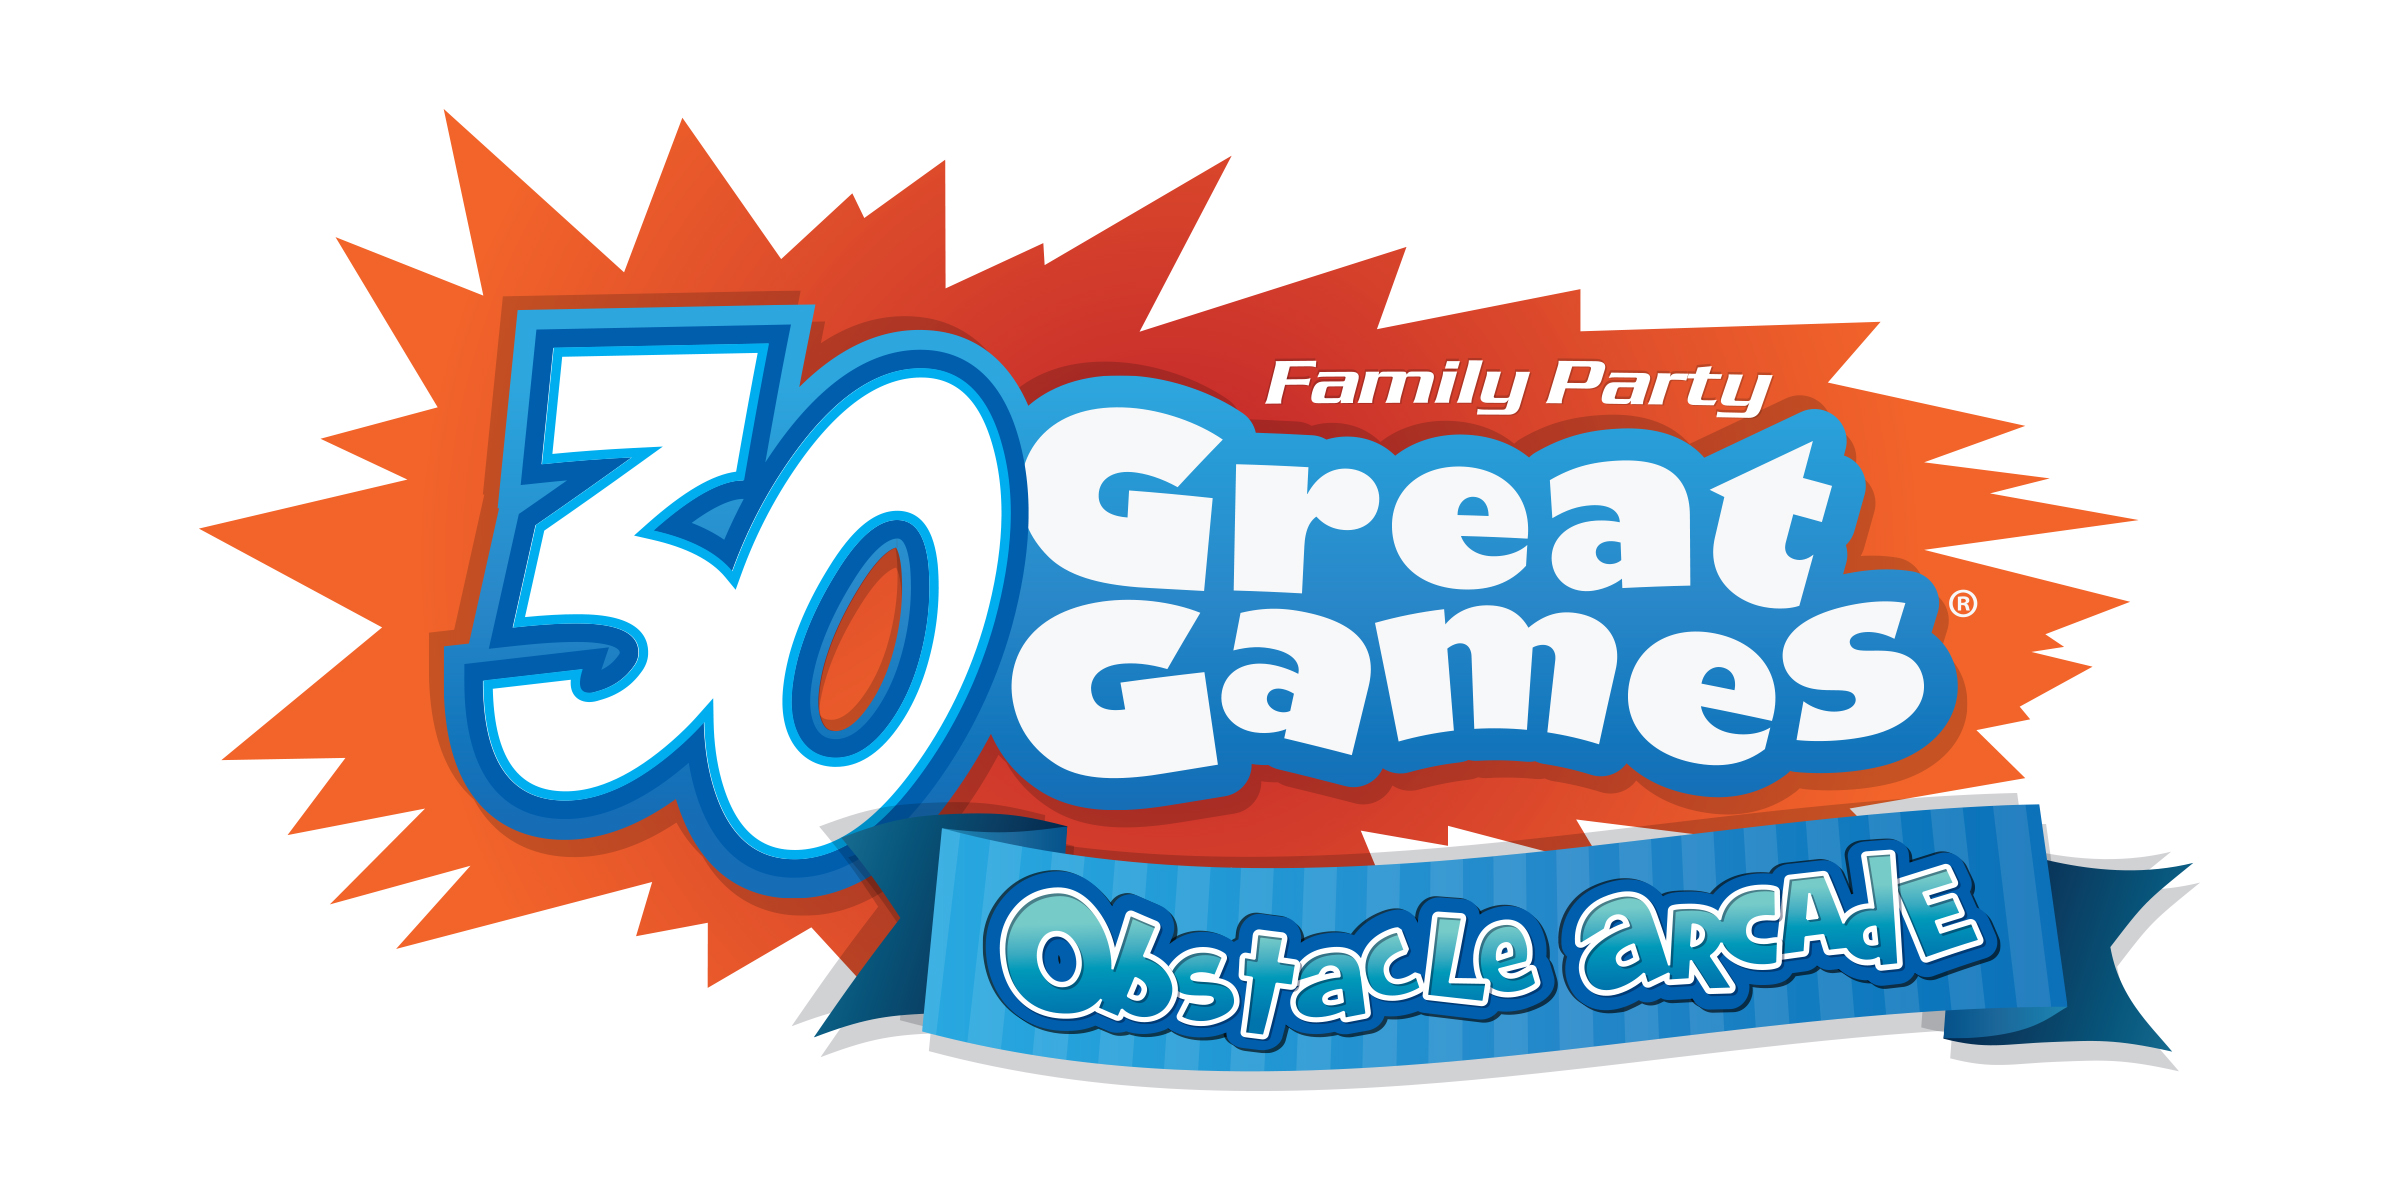 Meer dan wat dan ook Pluche pop Australische persoon Family Party: 30 Great Games: Obstacle Arcade Box Art And Screens - Pure  Nintendo